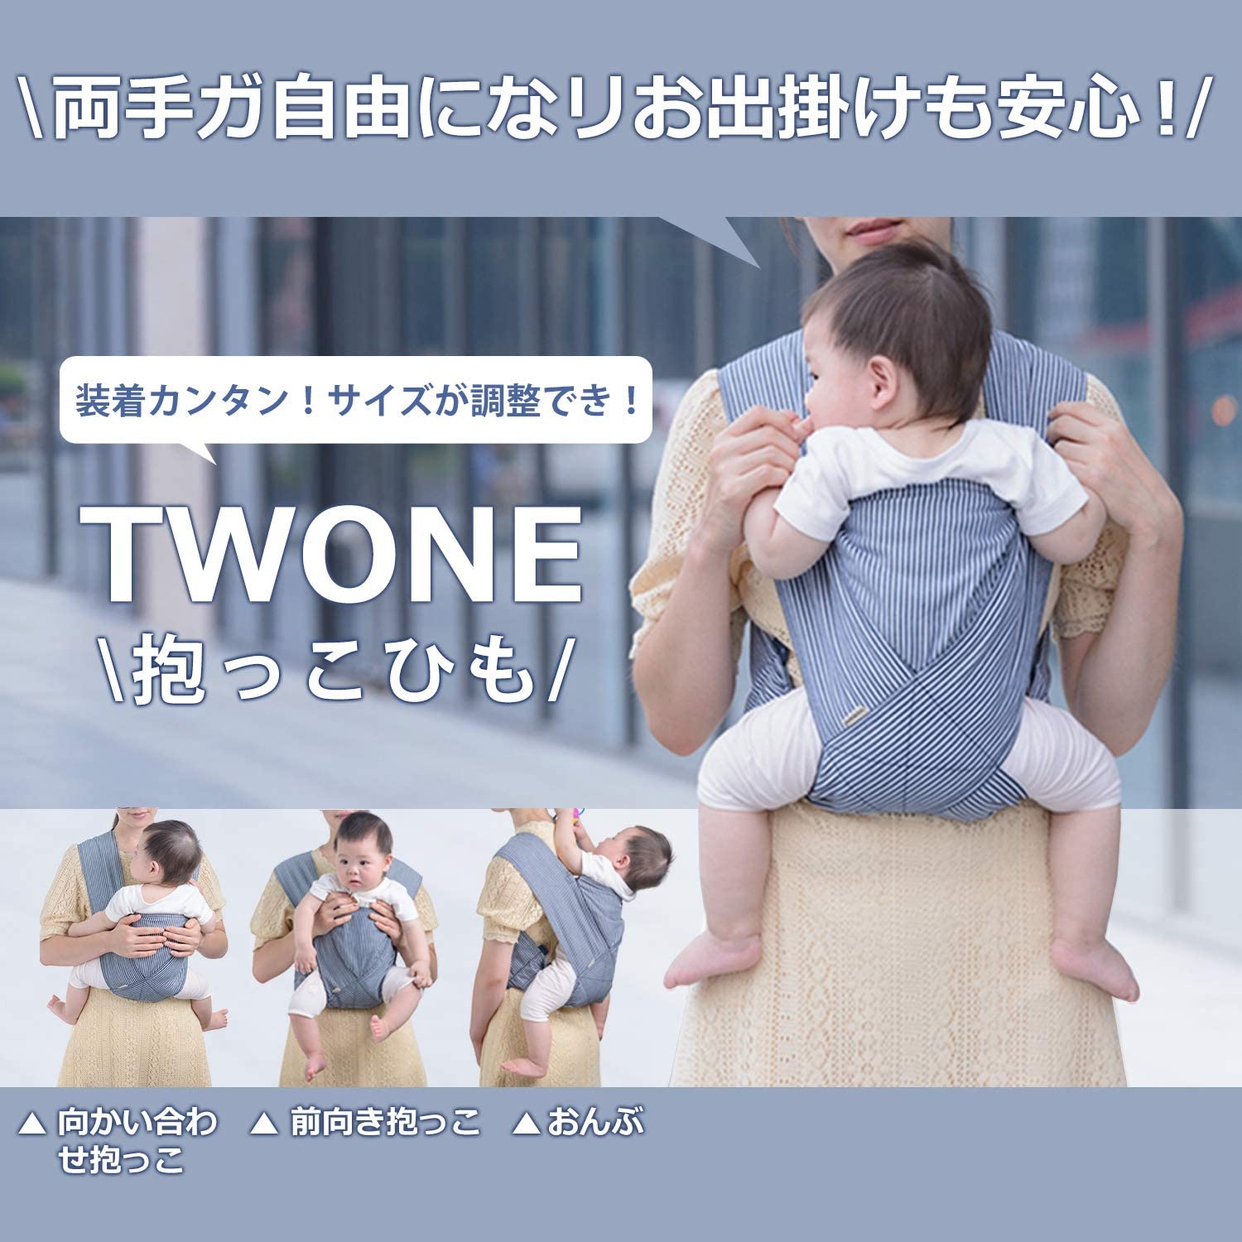 TWONE(ツォン) 抱っこひもの商品画像2 